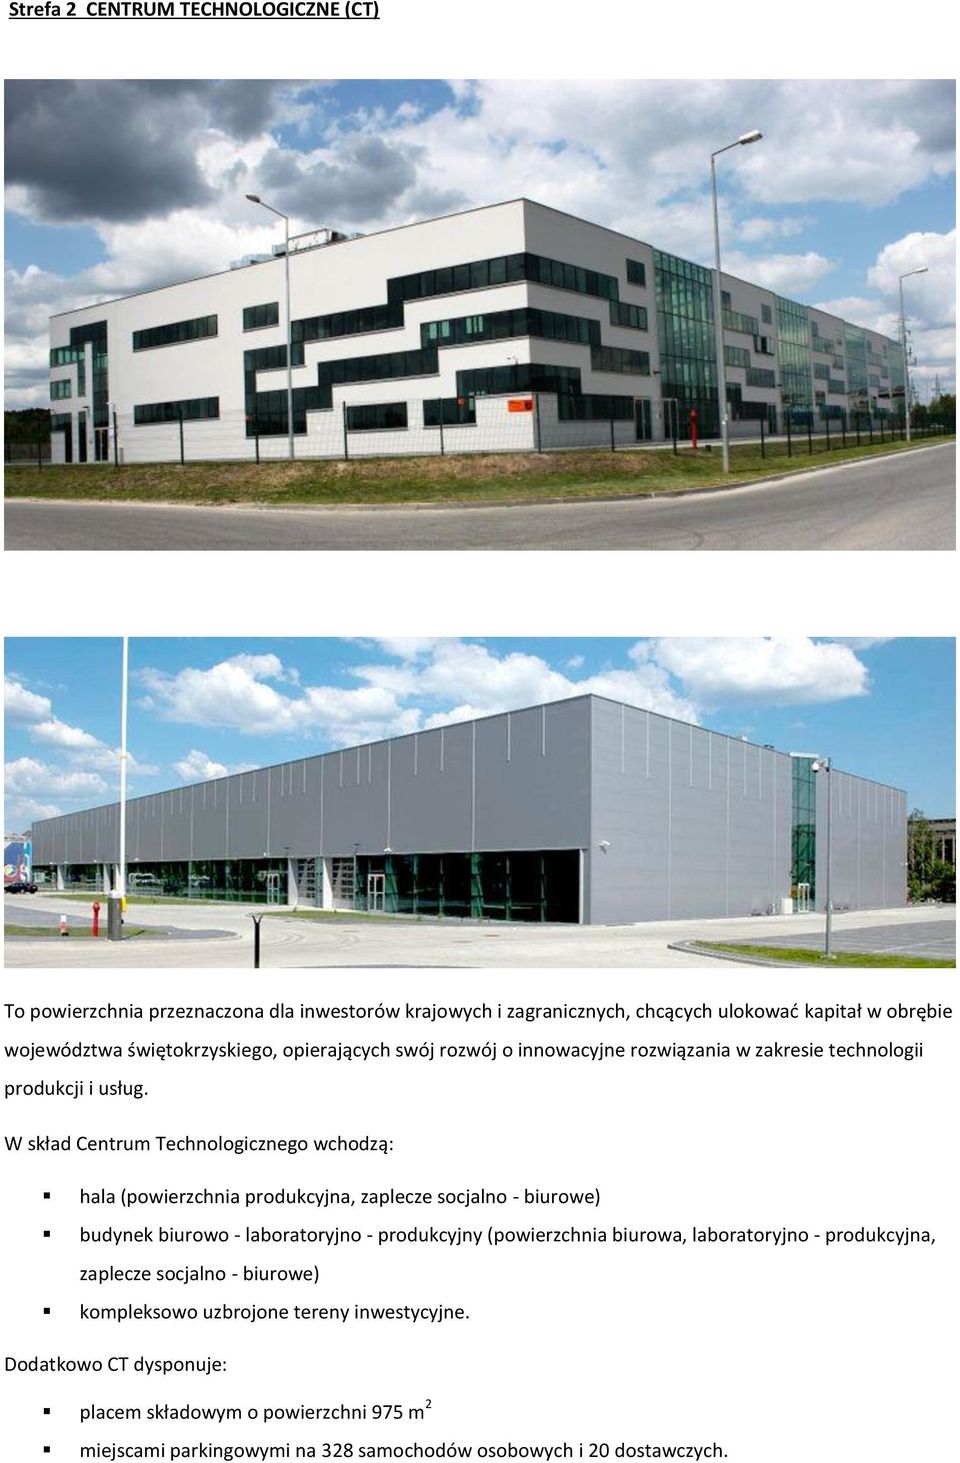 W skład Centrum Technologicznego wchodzą: hala (powierzchnia produkcyjna, zaplecze socjalno - biurowe) budynek biurowo - laboratoryjno - produkcyjny (powierzchnia